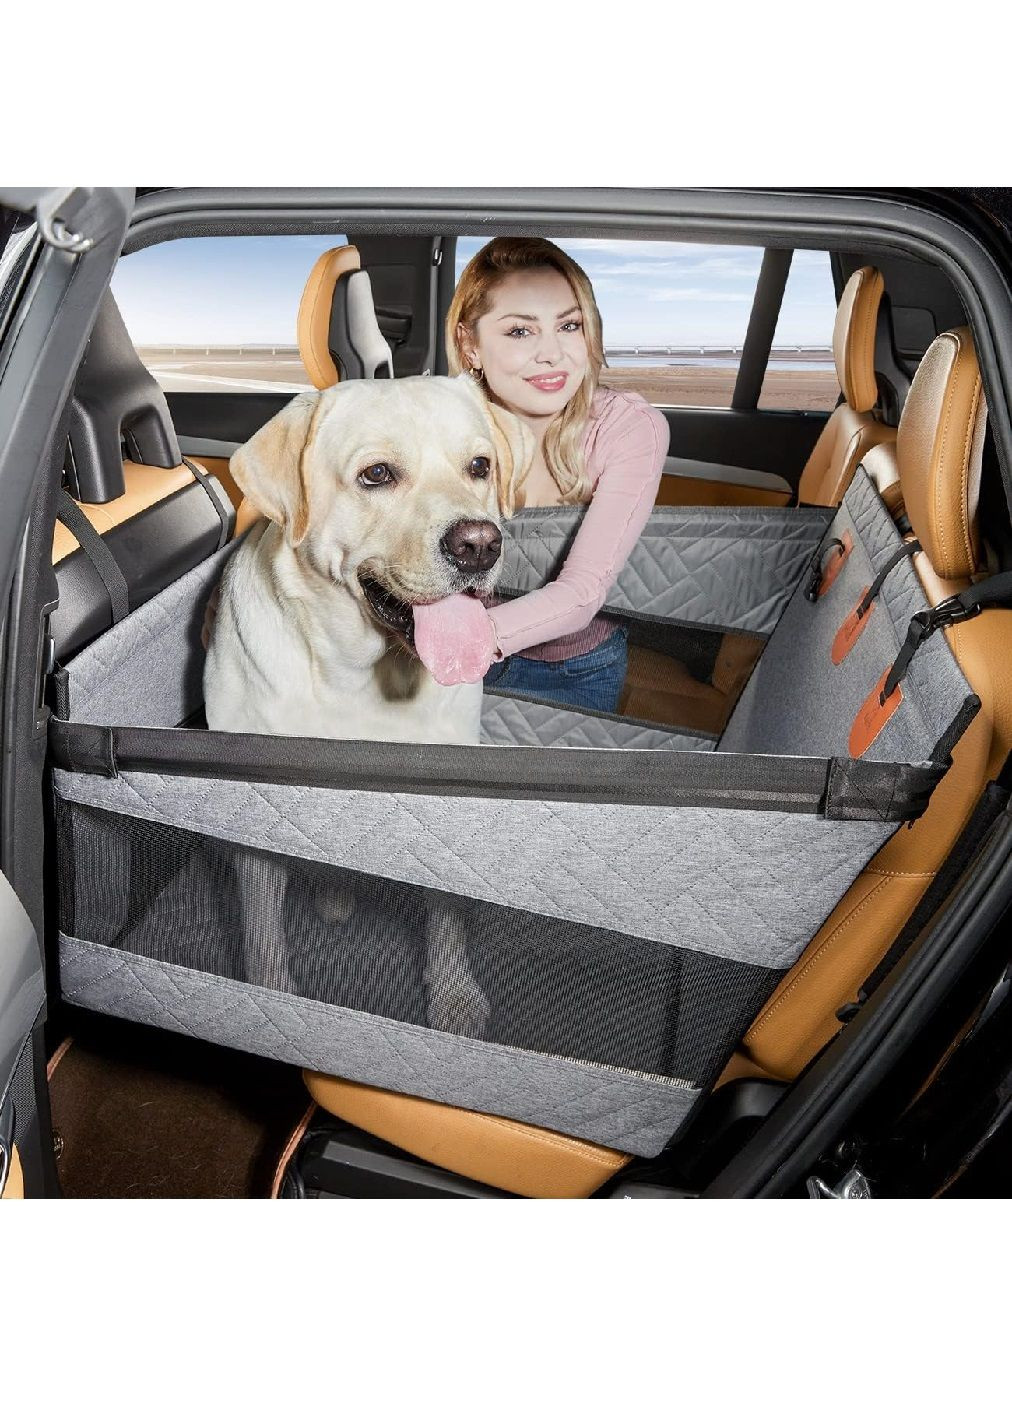 Сидение гамак органайзер в автомобиль для перевозки транспортировки собак срелних размеров (476755-Prob) Серое Unbranded (290250845)